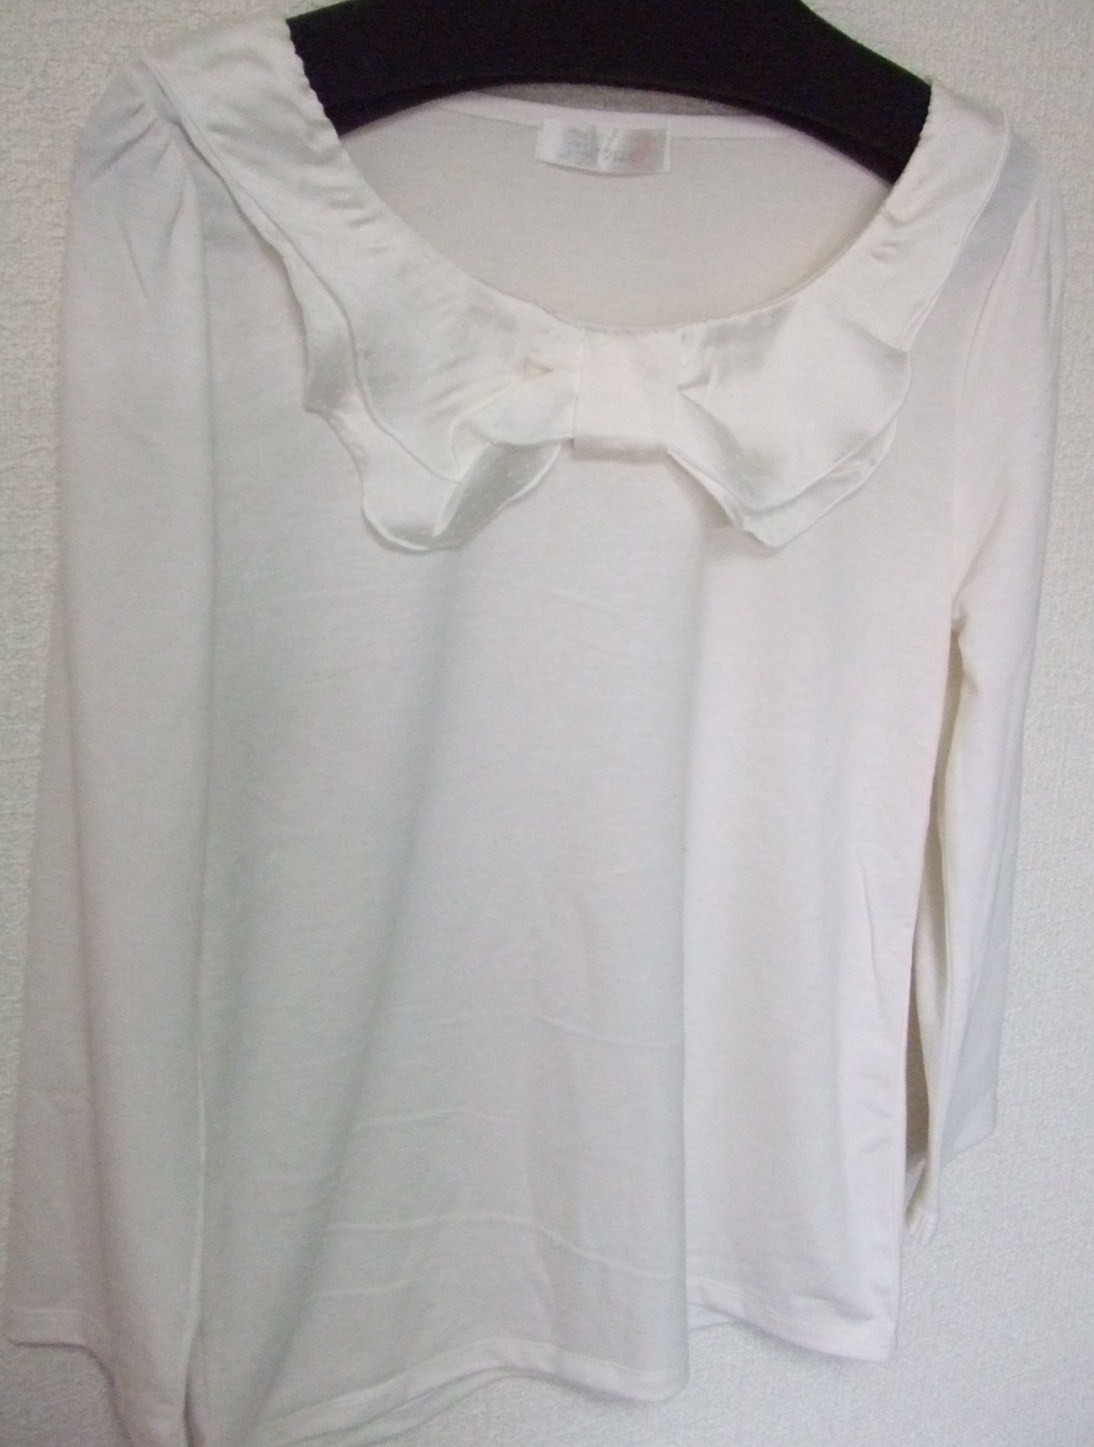 ⑤白のカットソー 七分袖で、胸元がリボンぽいデザイン